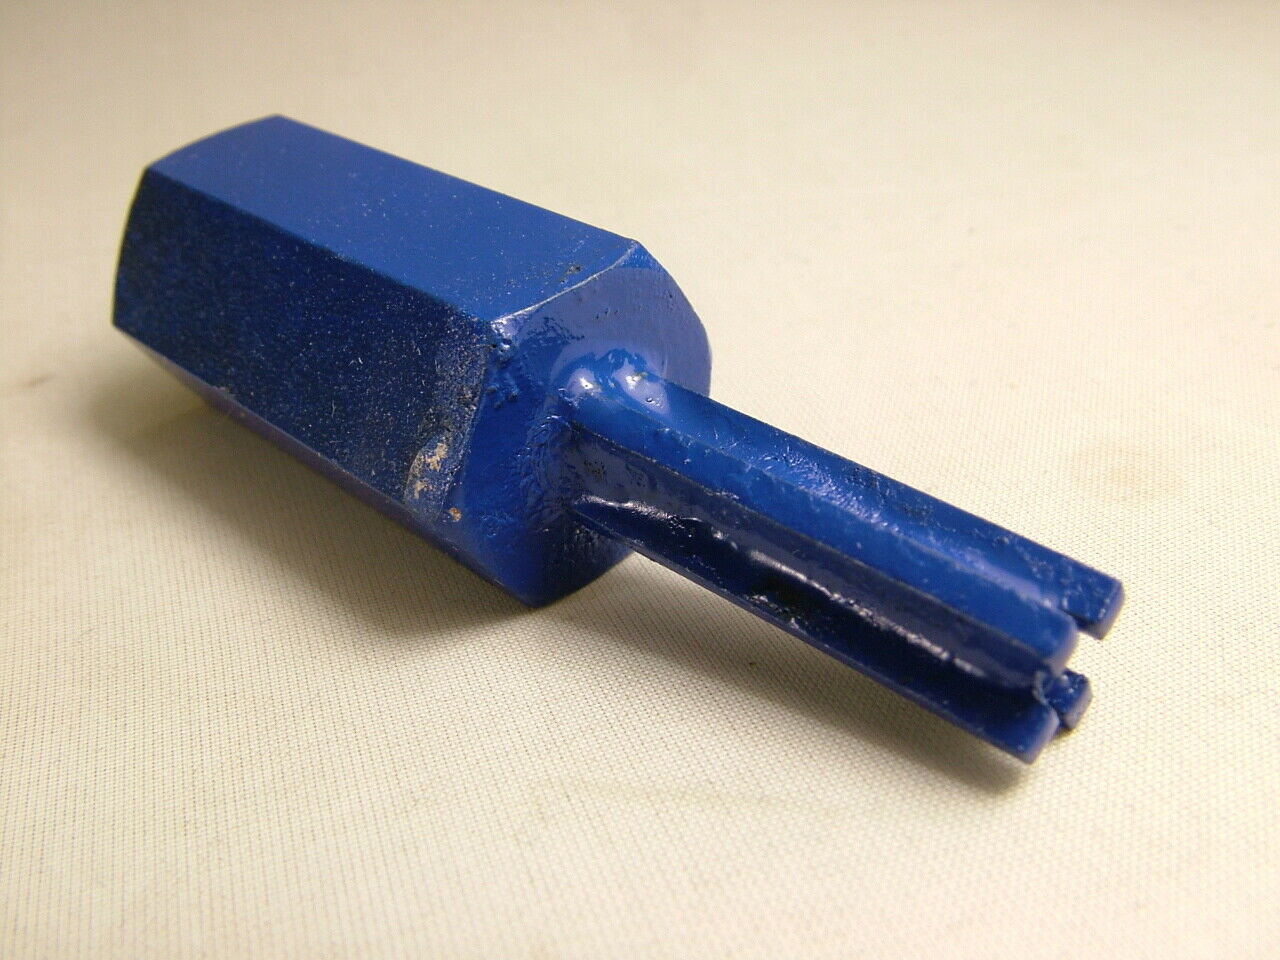 Solid Carbide 4-Flute Mortar Raking Bit, 10 x 30mm - Click Image to Close